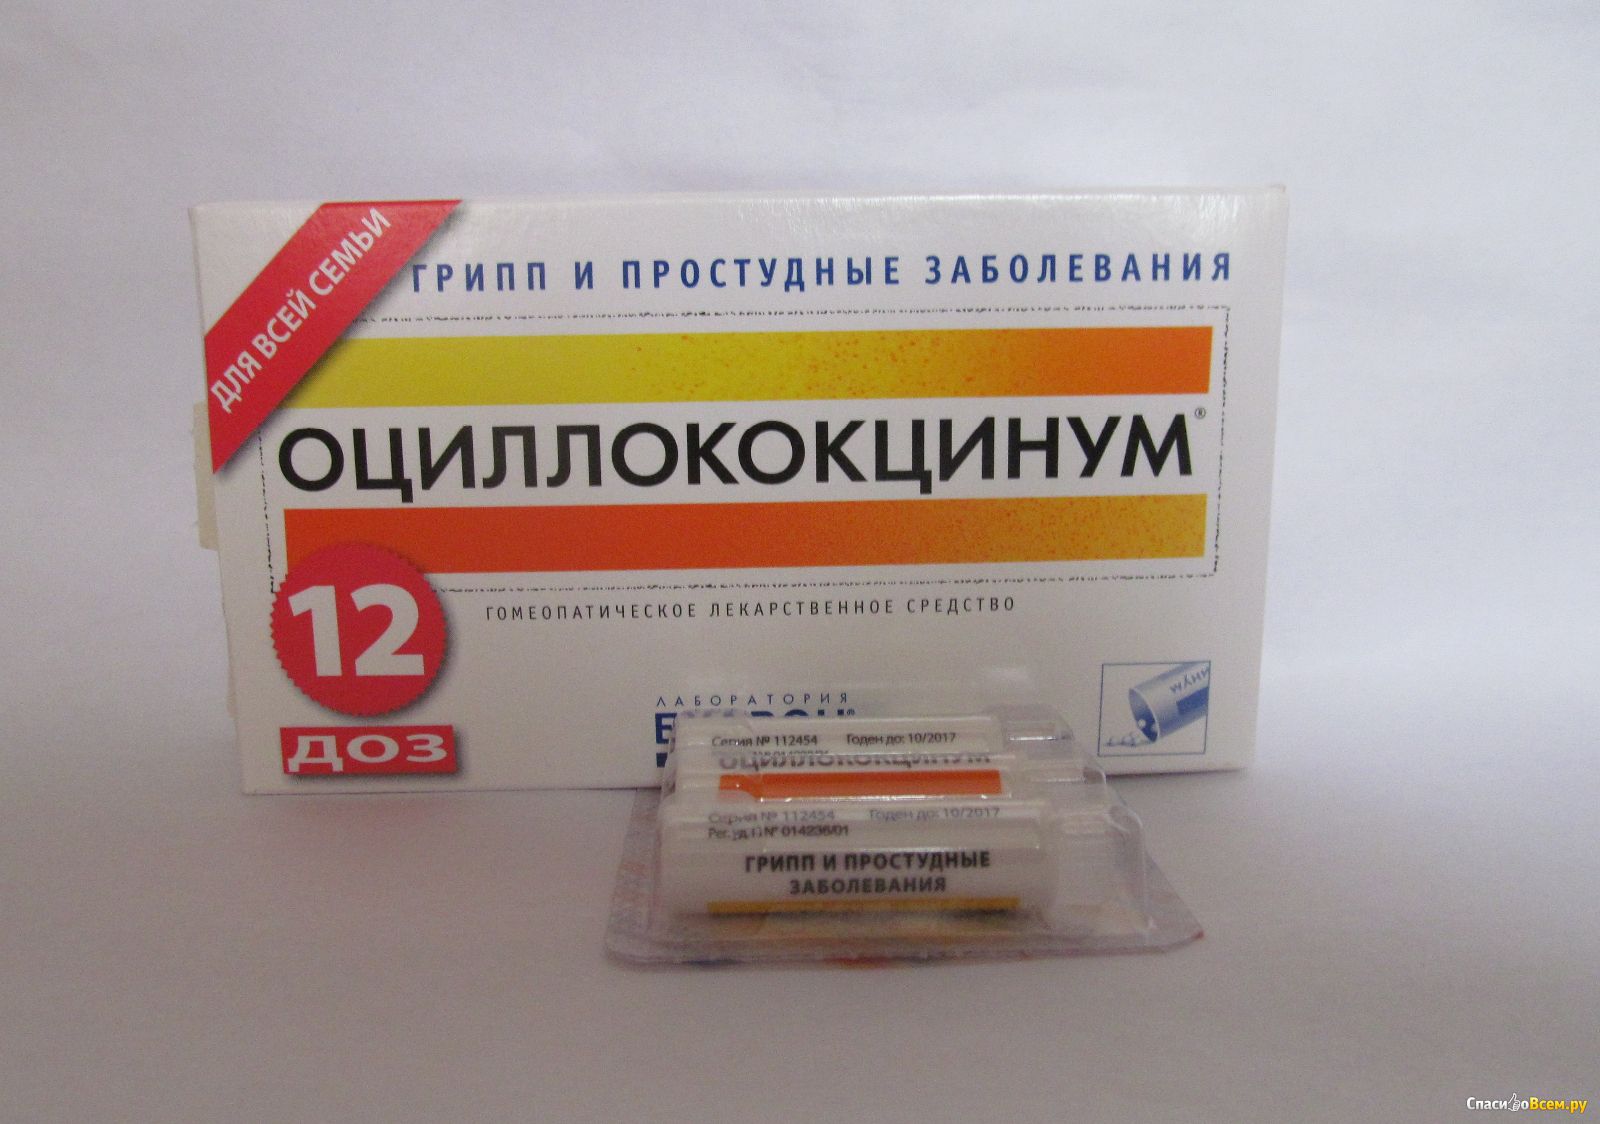 Стоимость Оциллококцинум В Аптеке